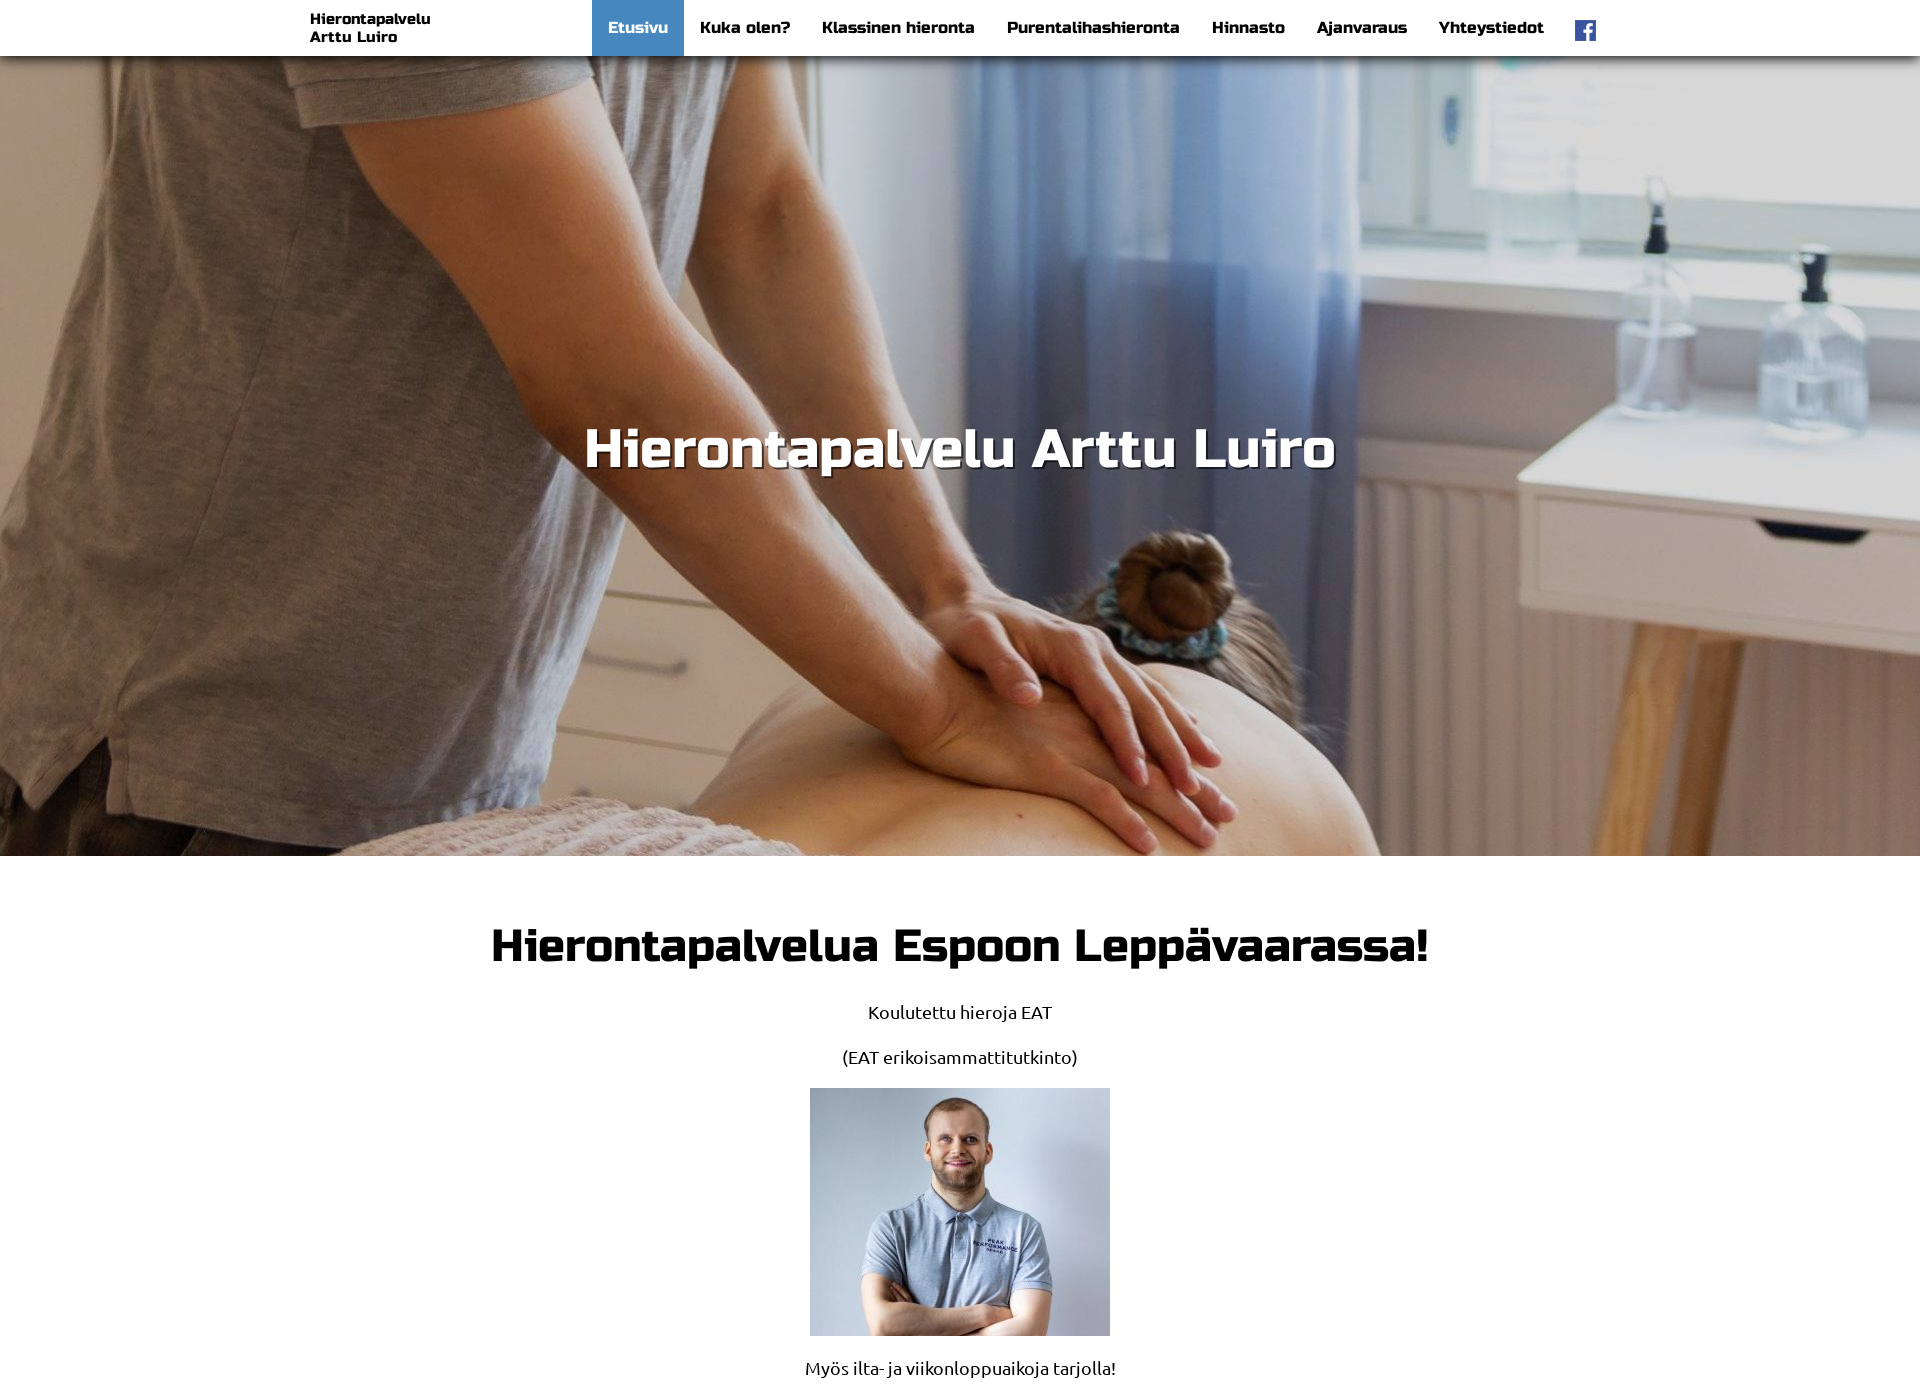 Näyttökuva hierontapalveluarttuluiro.fi